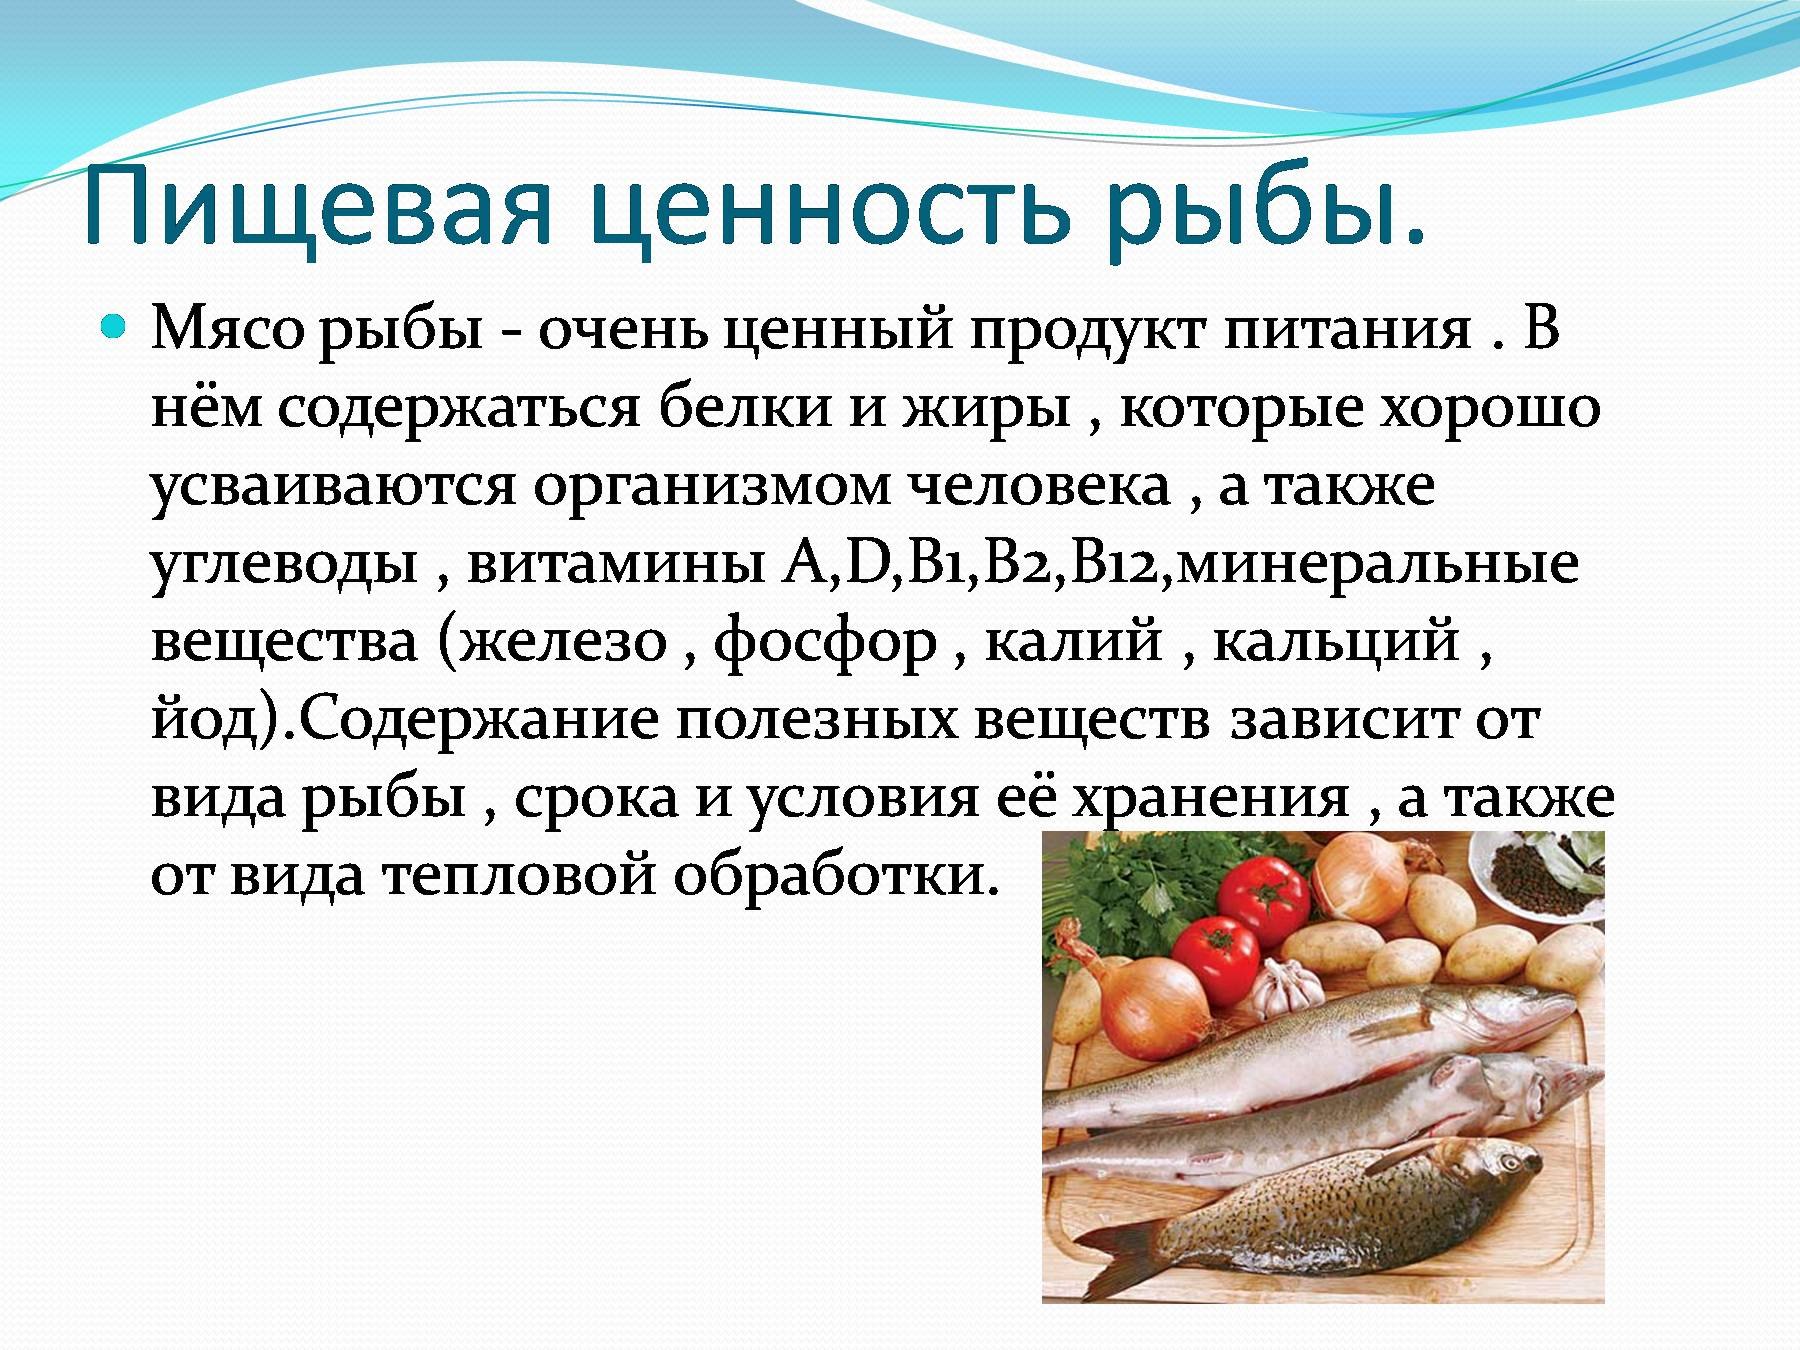 В мясе есть углеводы. Пищевая ценность рыбы. Пищевая и биологическая ценность рыбы. Ценность рыбы в питании человека. Пищевая ценность мяса рыбы.